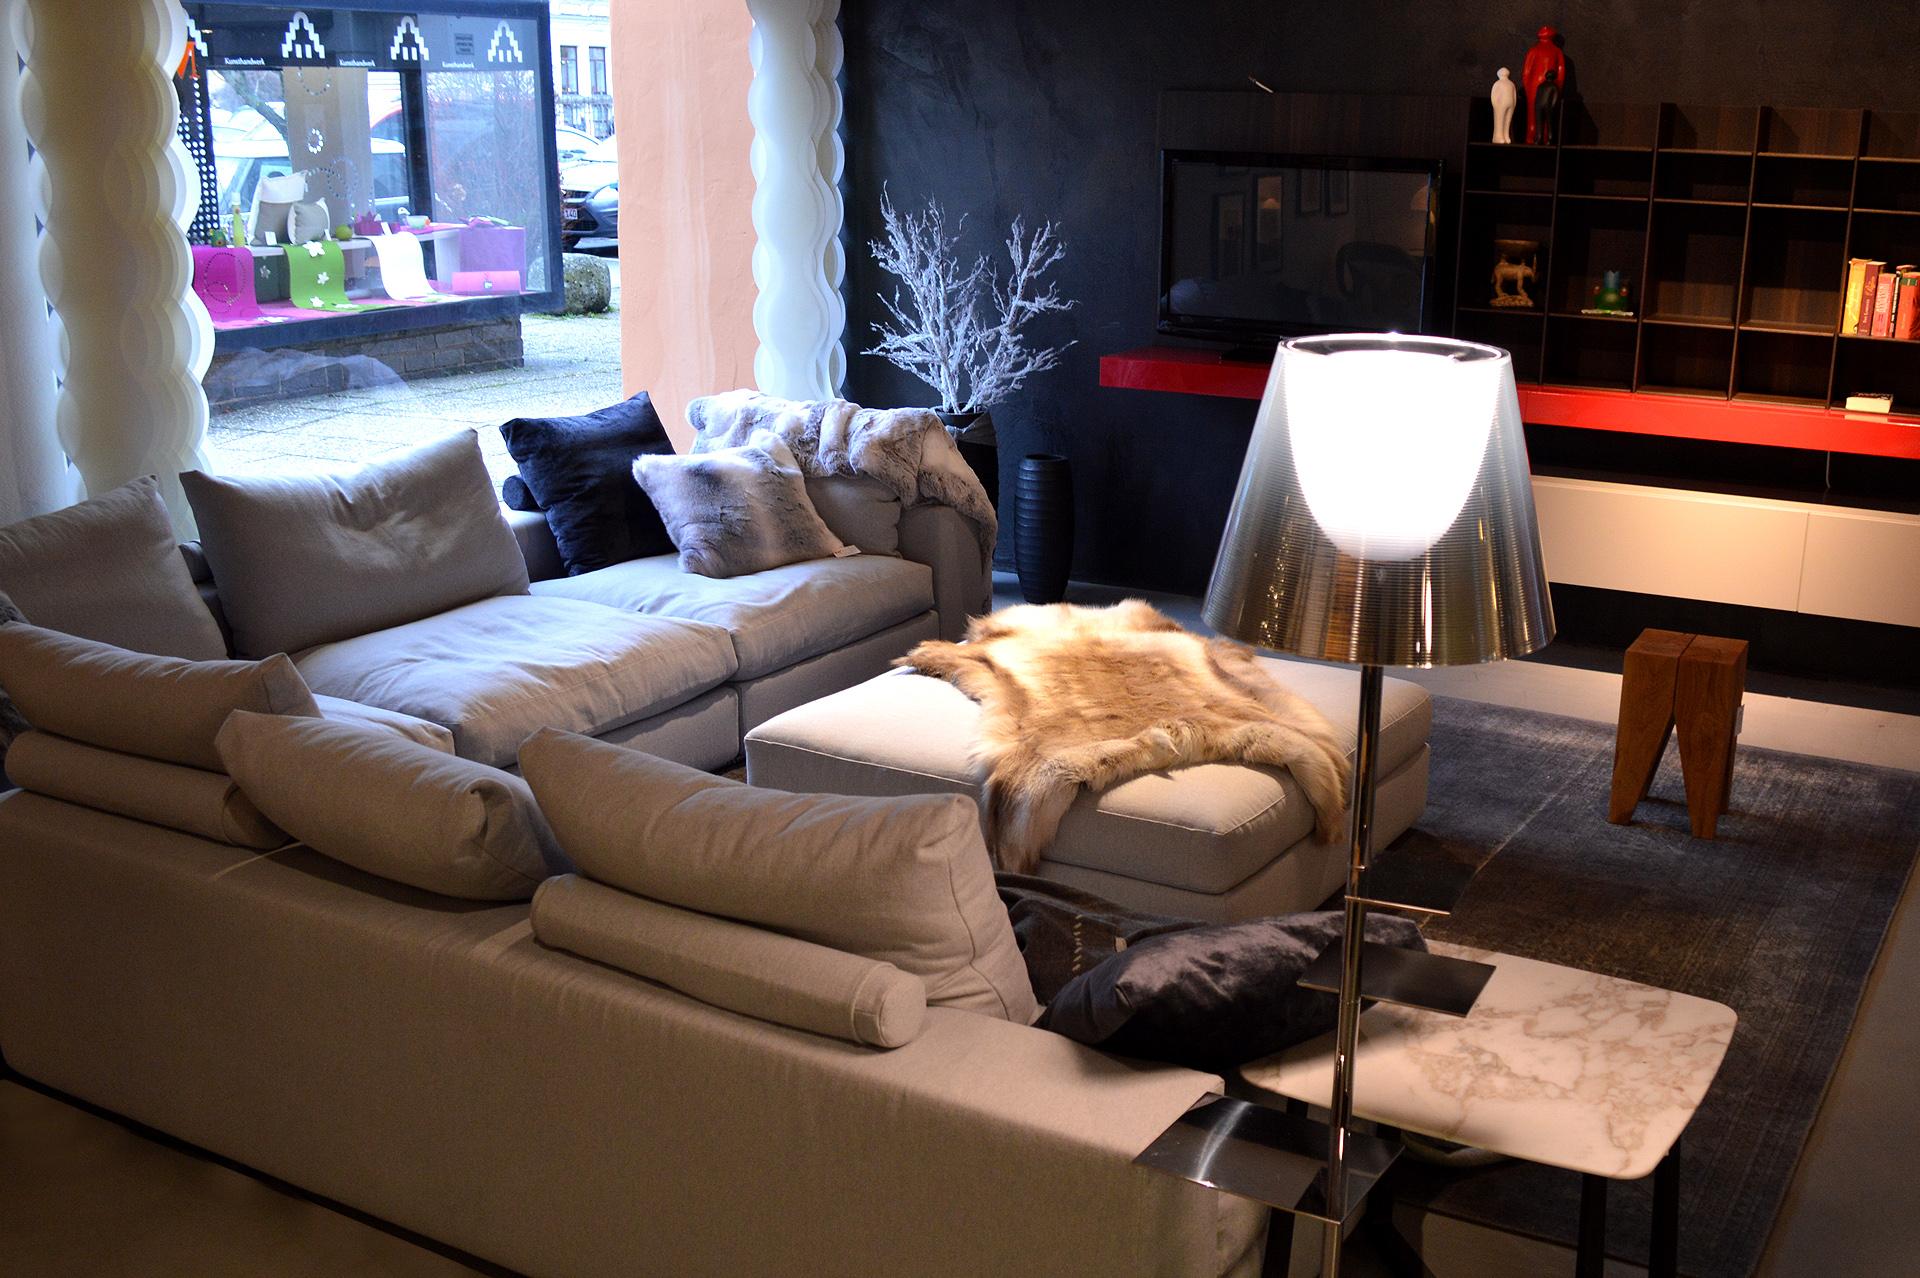 Italienisches Sitzgefühl und urbaner Luxus - das Groundpiece Sofa von Flexform #wohnzimmer #ecksofa #stehlampe #sofa ©günstigerdesign